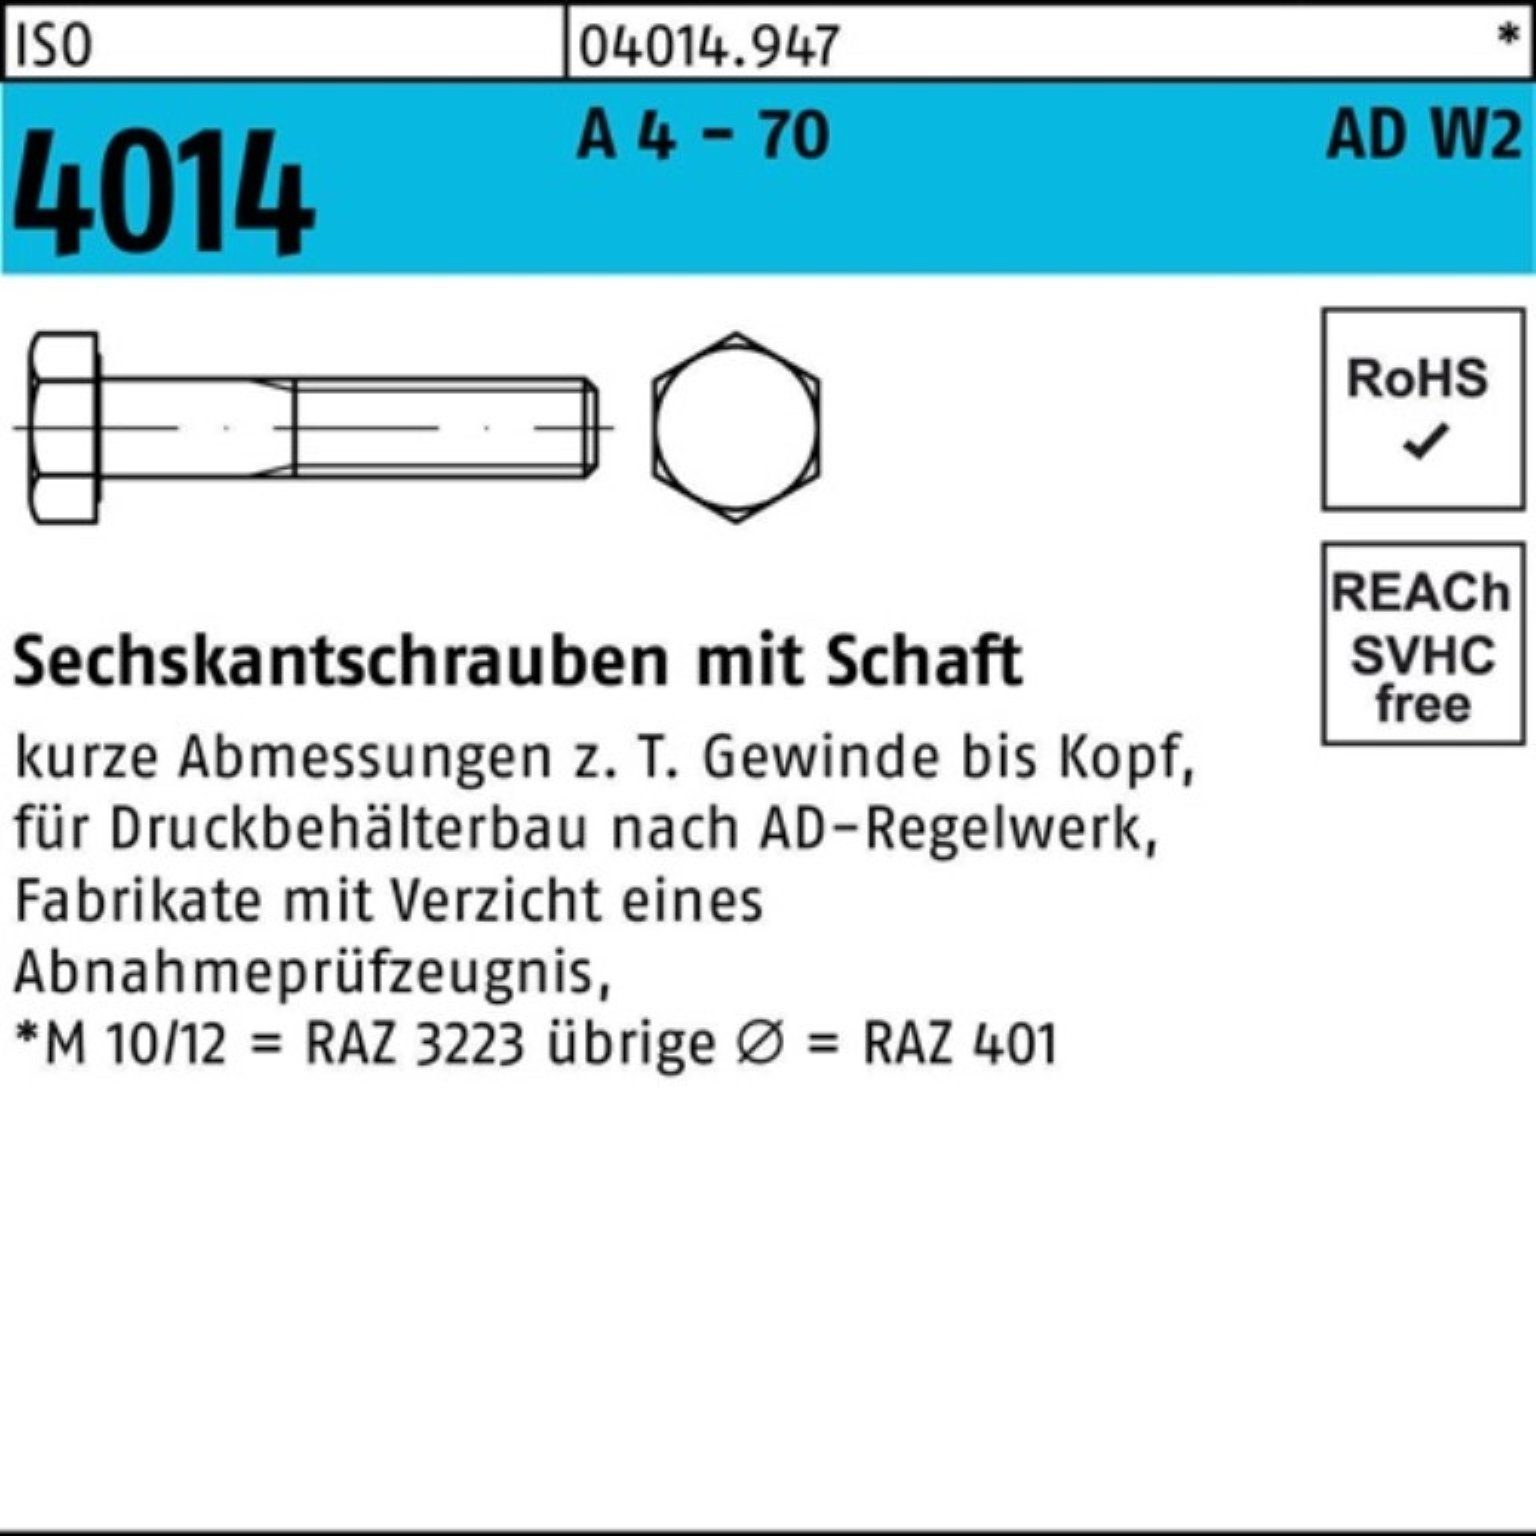 Bufab Sechskantschraube 100er Pack Sechskantschraube ISO 4014 Schaft M20x 170 A 4 - 70 AD-W2 1